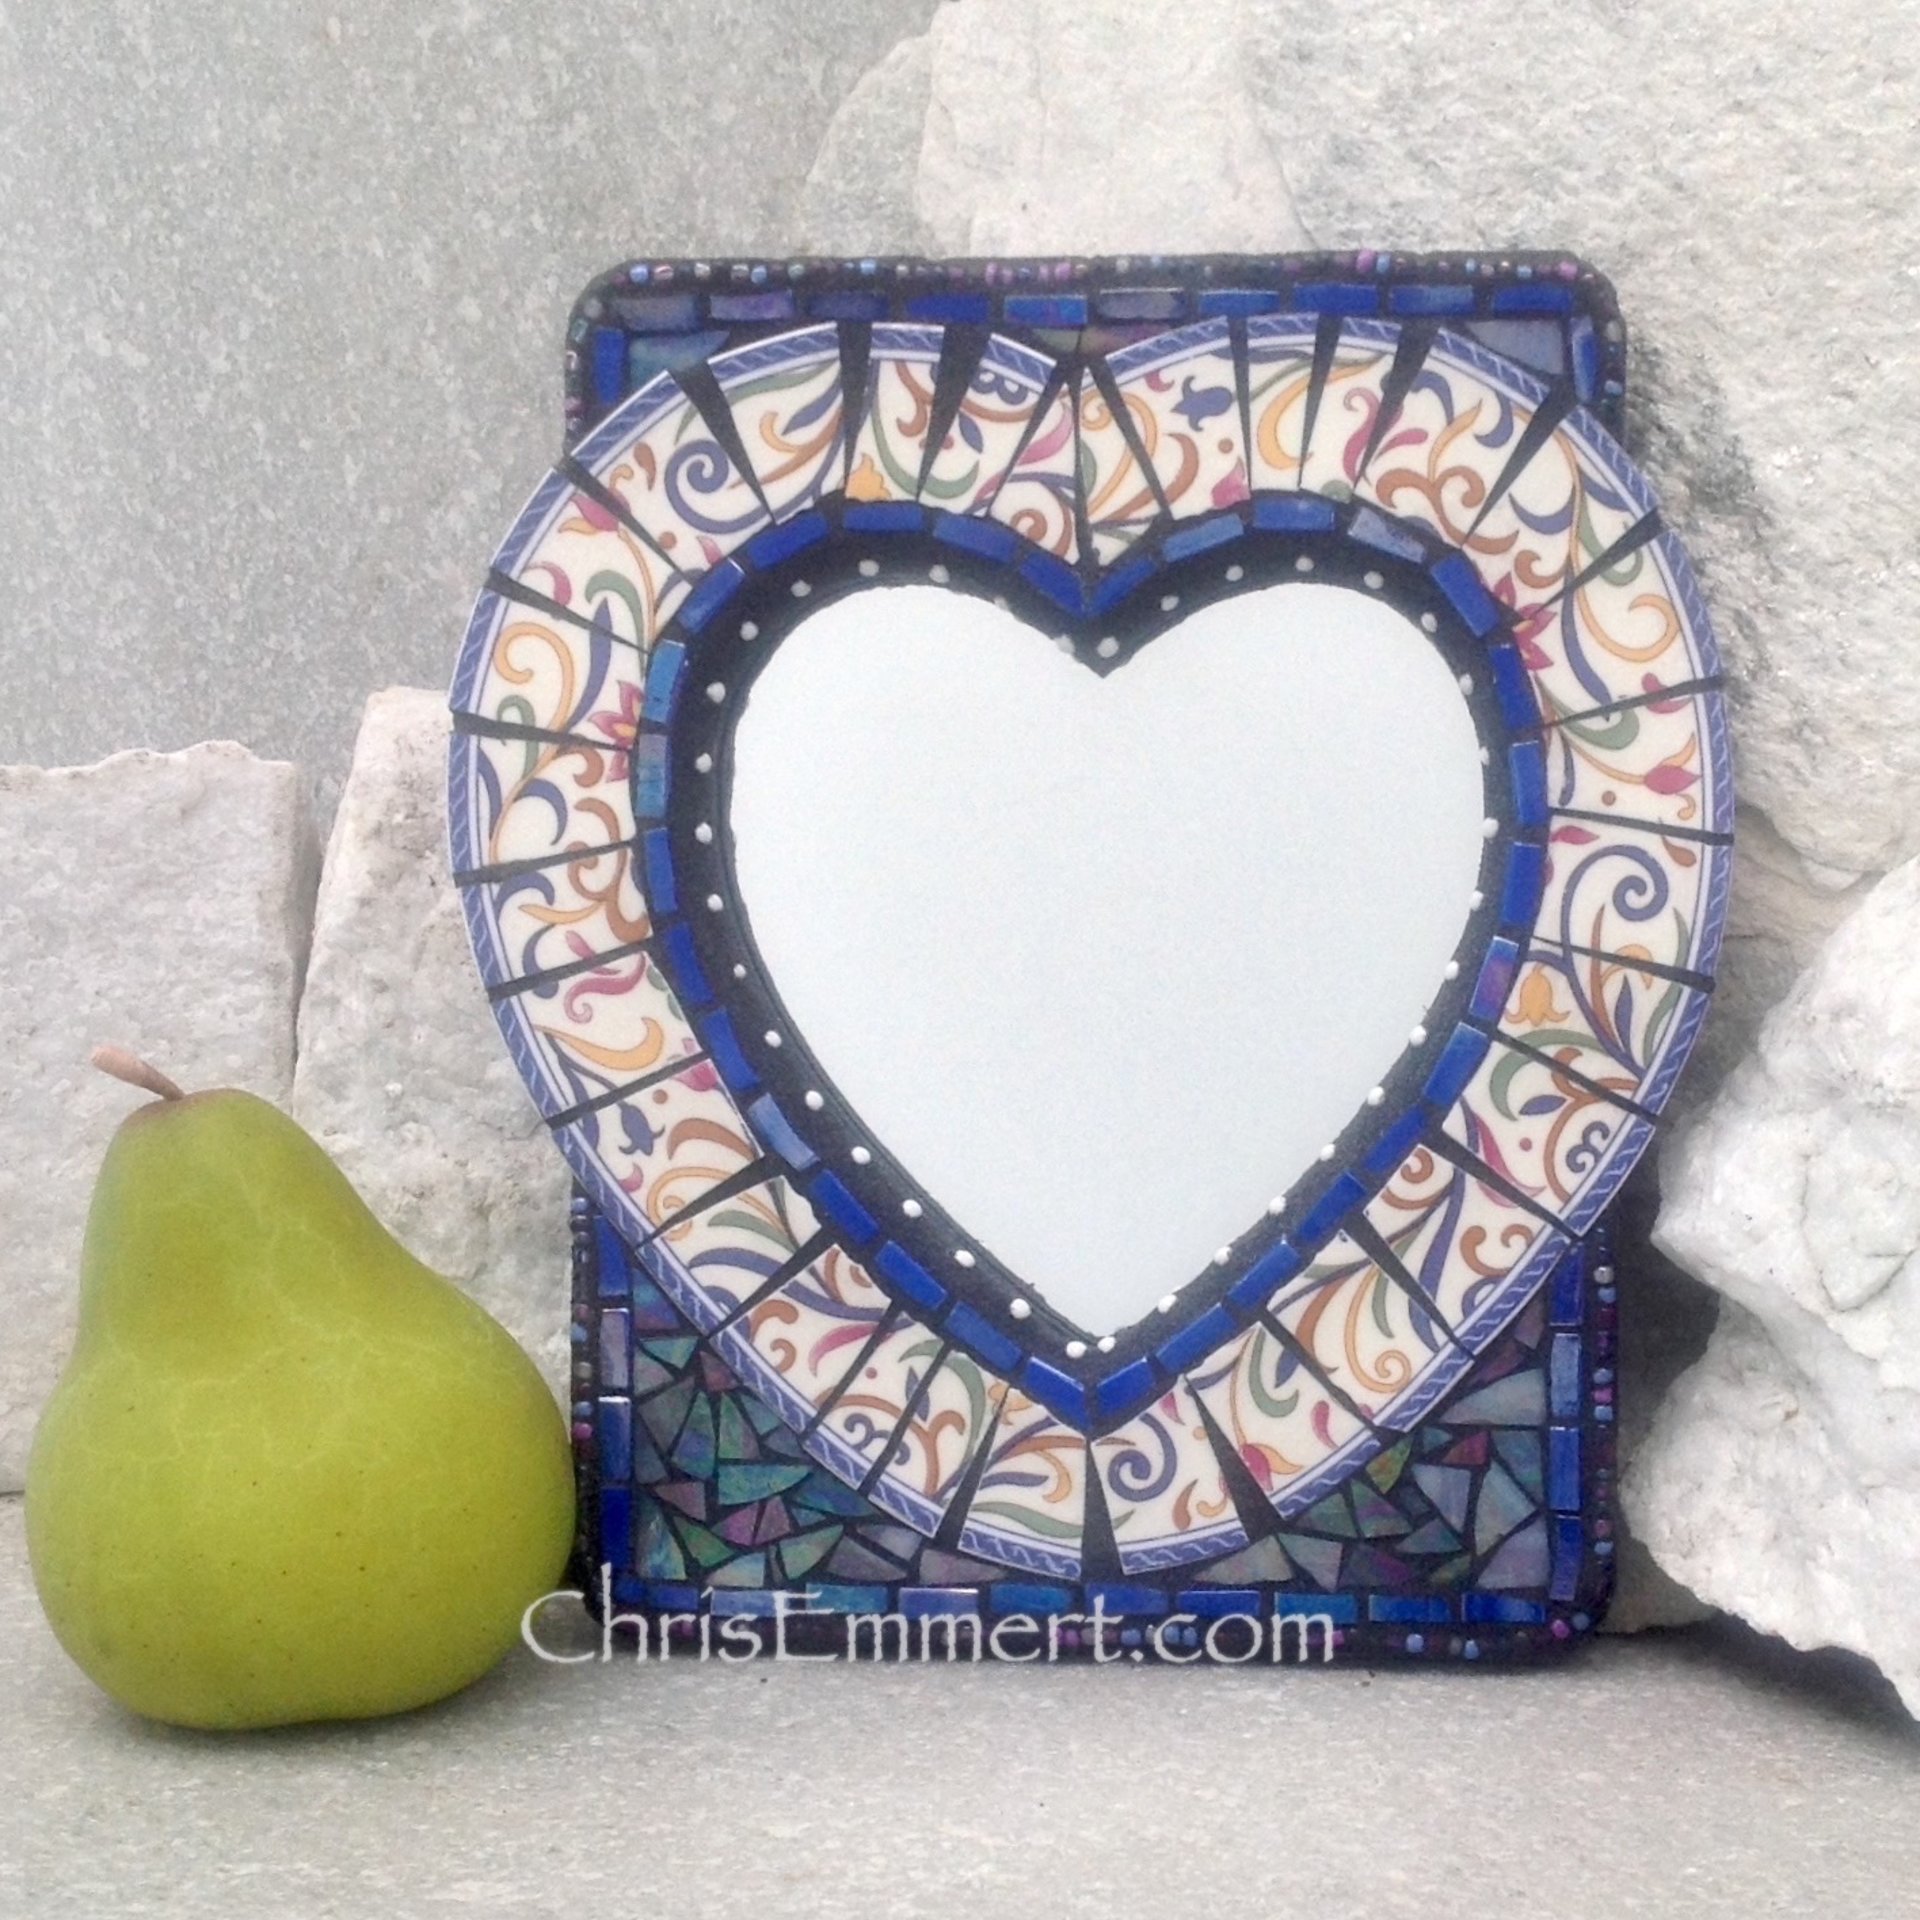 Mixed Media Mosaic Mirror, #2, Heart Shaped Mirror, Home Decor